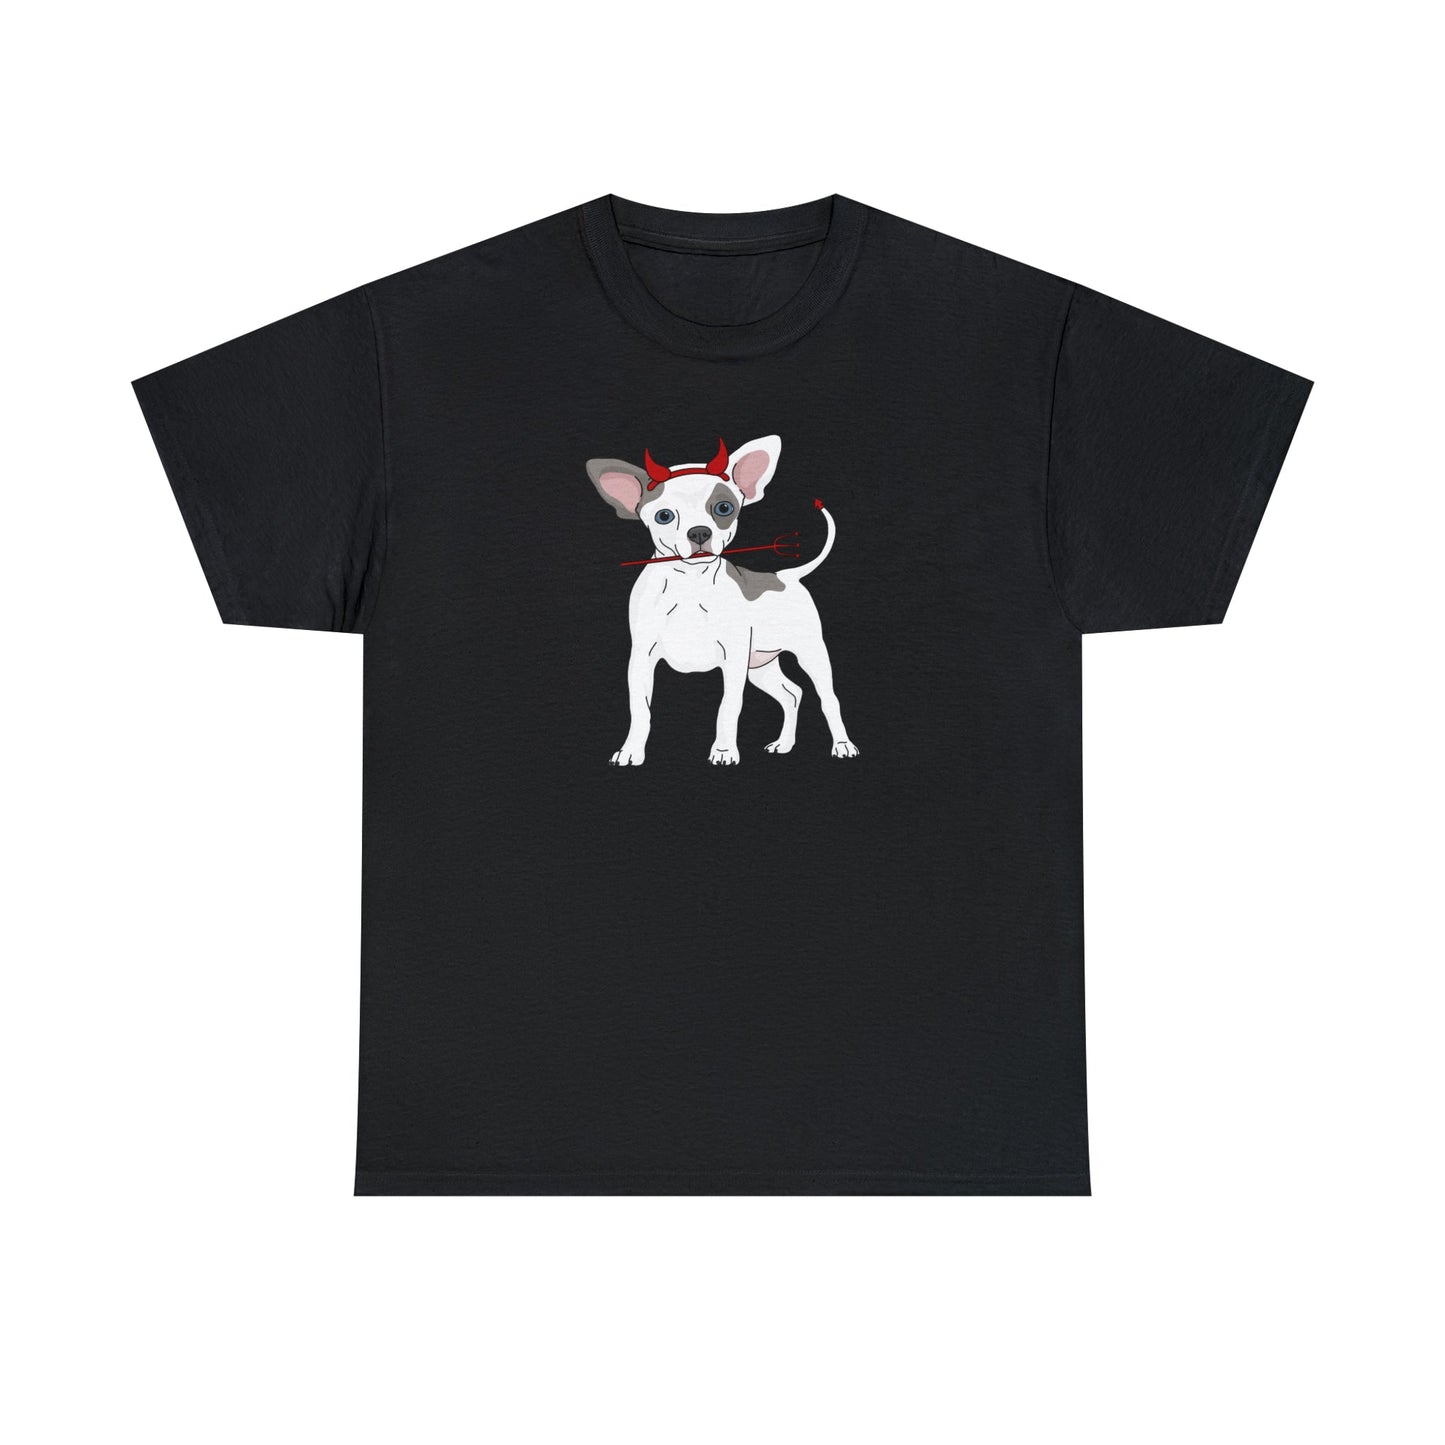 Devil Puppy | T-shirt - Detezi Designs-12483355830770231862